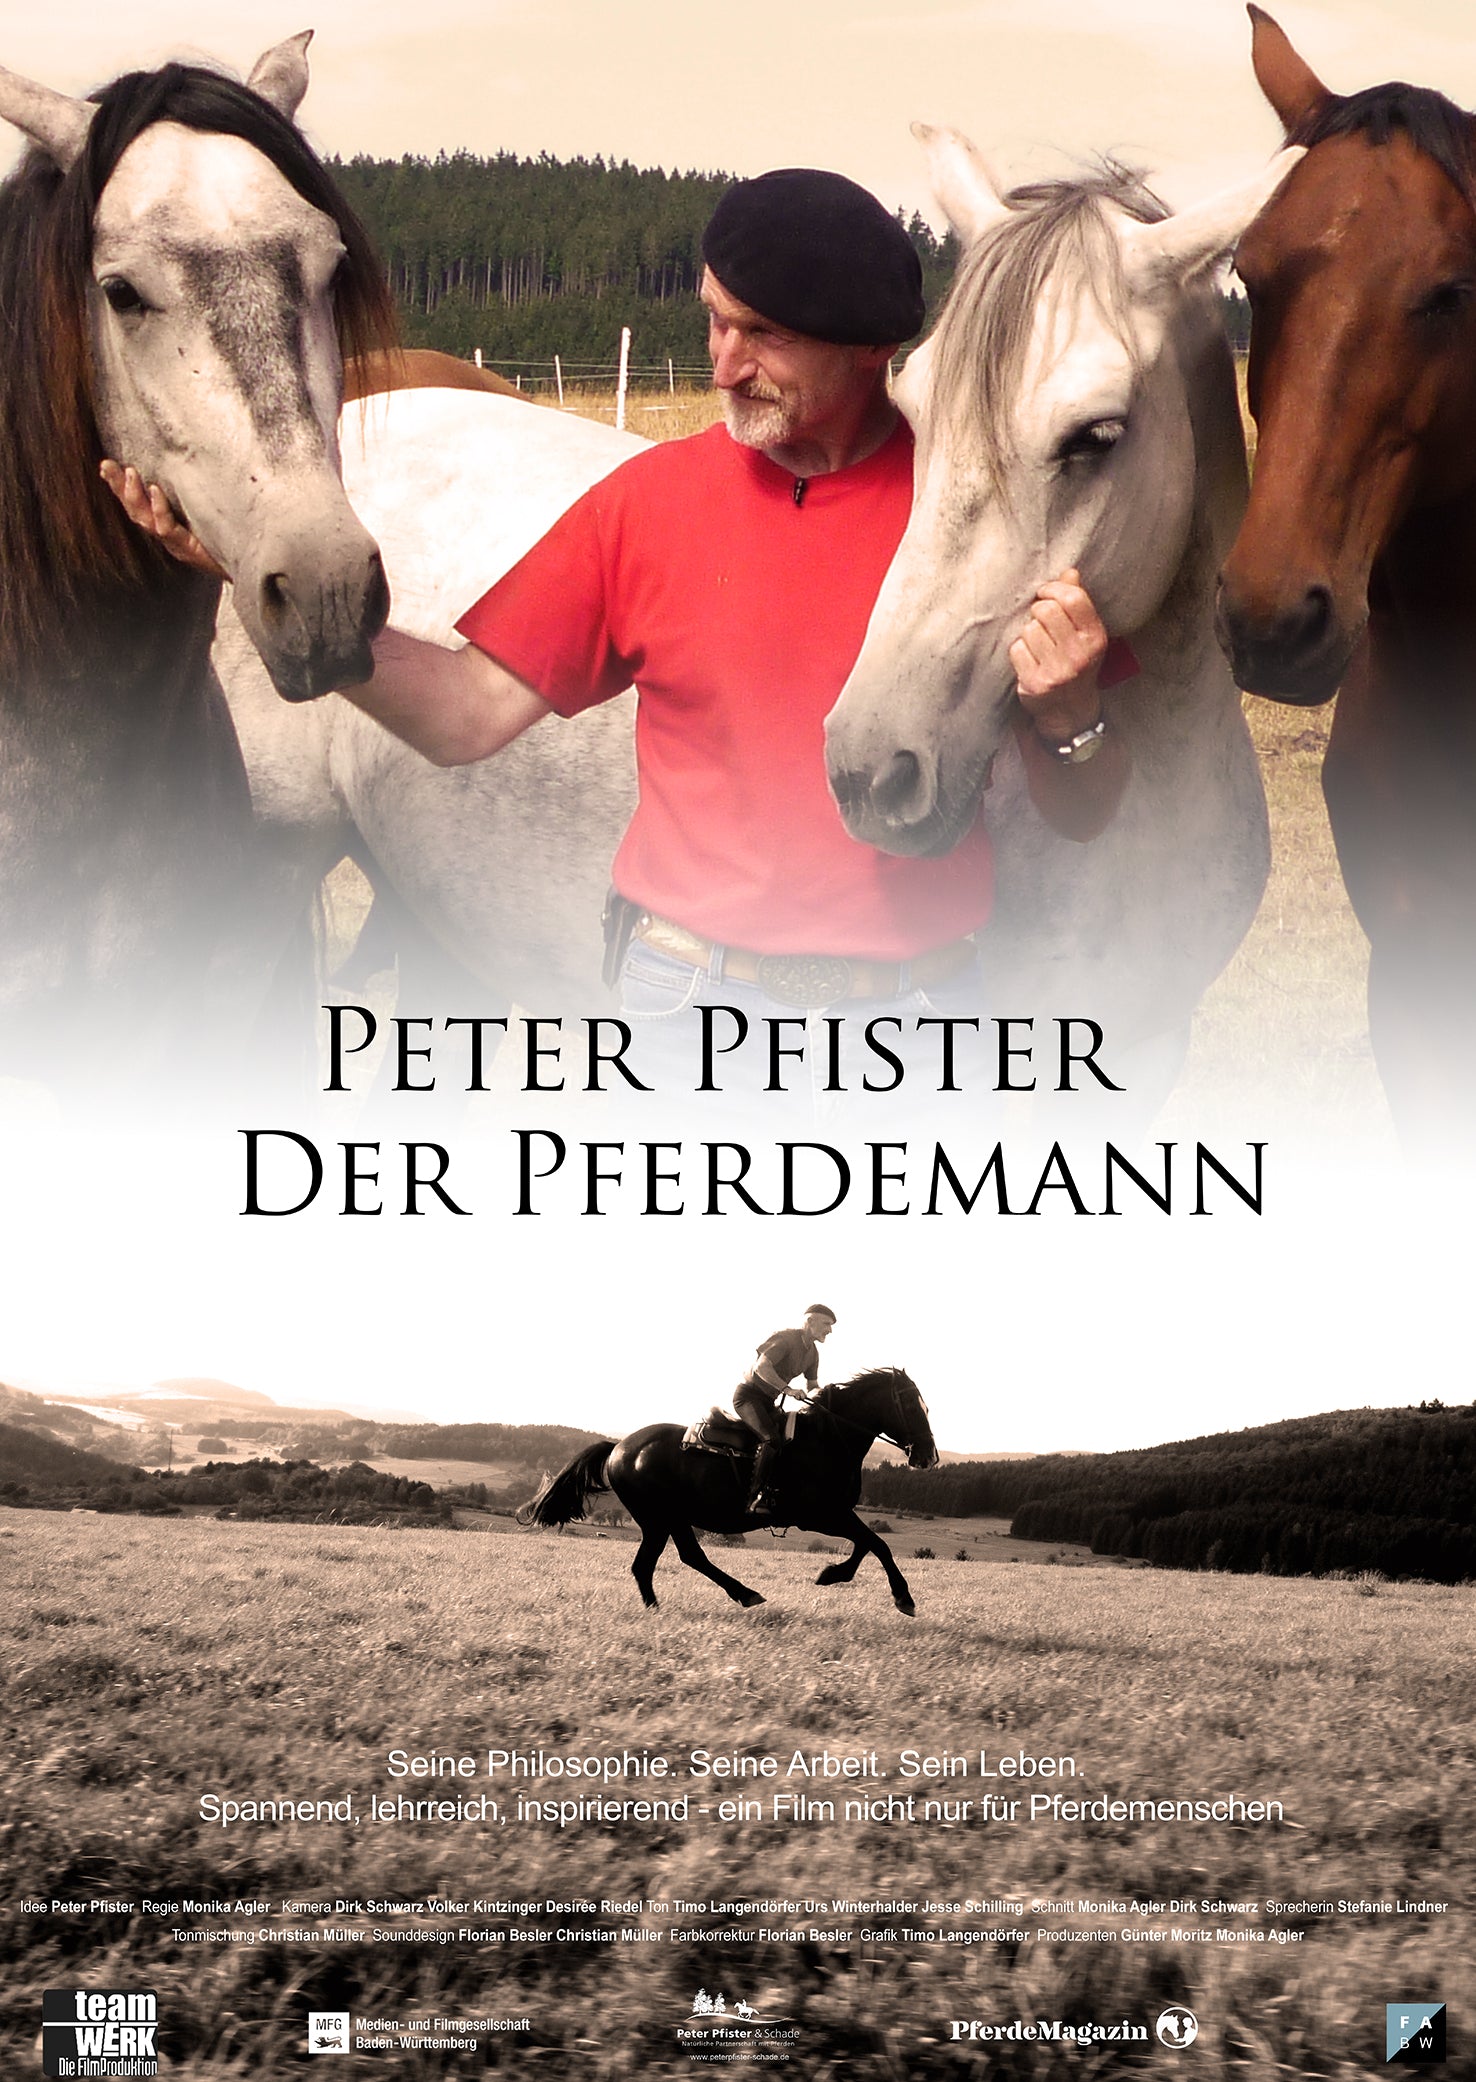 NEU DVD "PETER PFISTER DER PFERDEMANN"